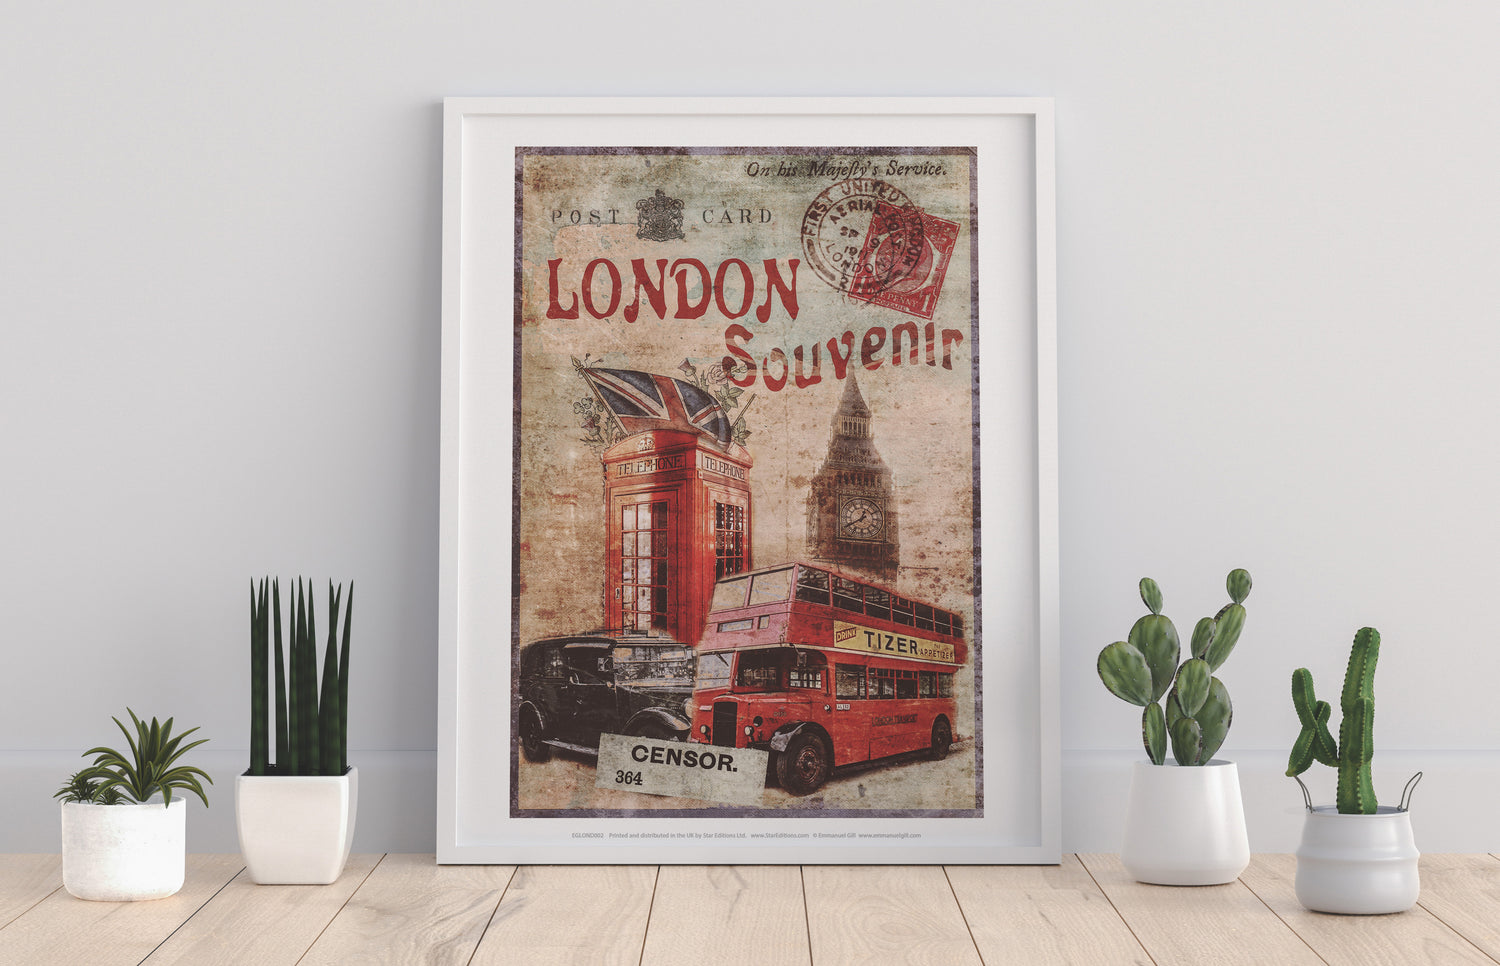 London Souvenir - Art Print